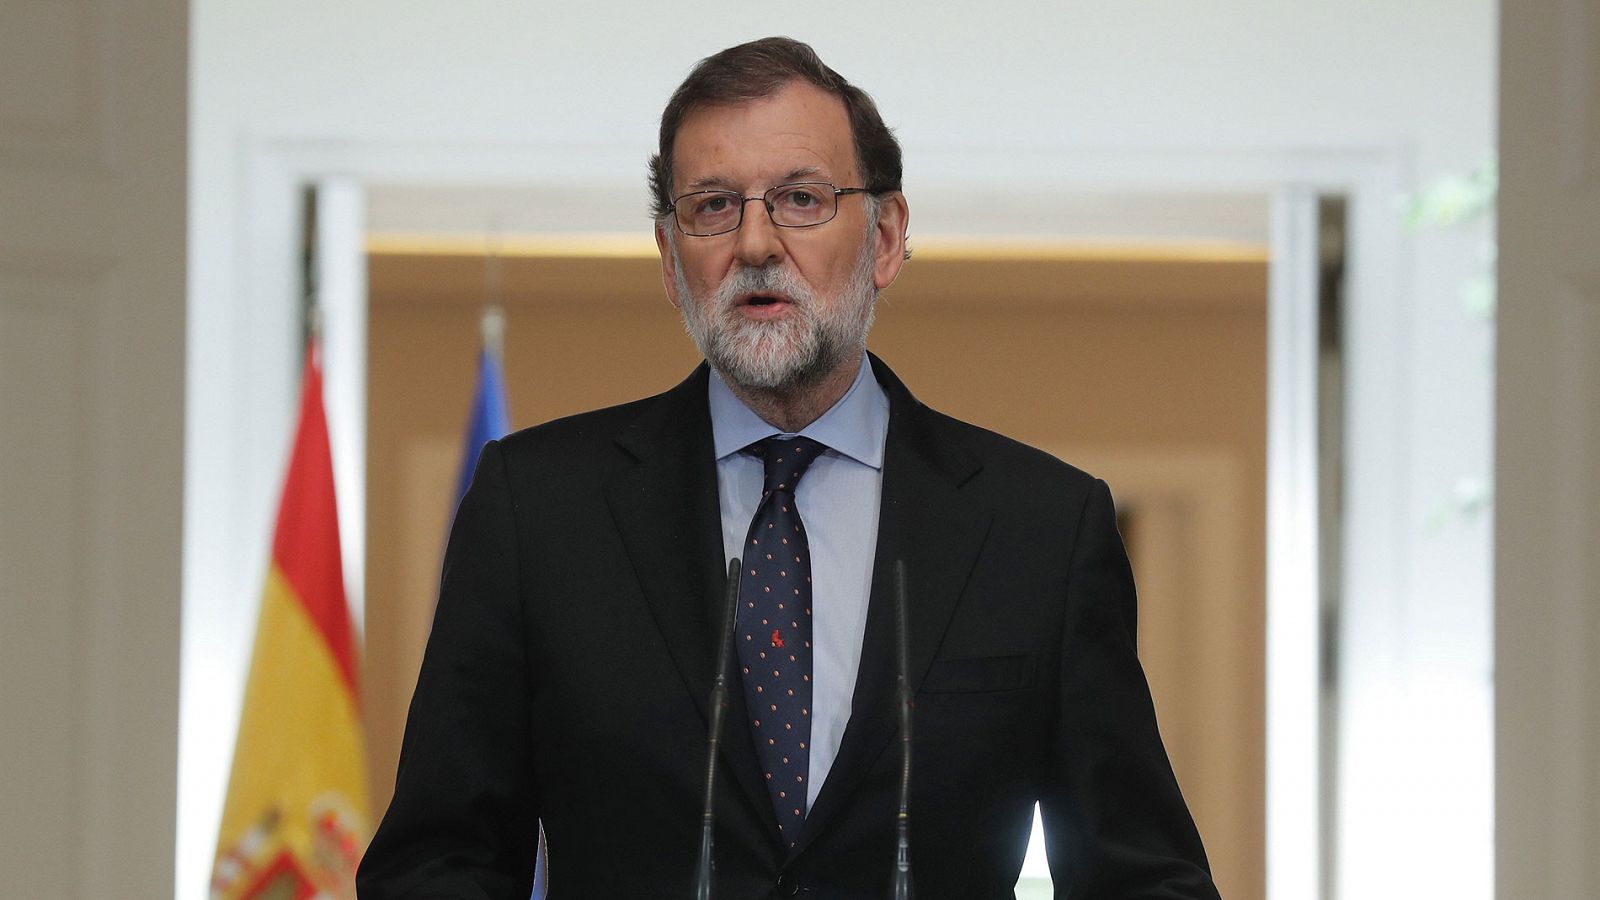 Disolución de ETA: Rajoy recuerda a las víctimas y advierte que no habrá impunidad